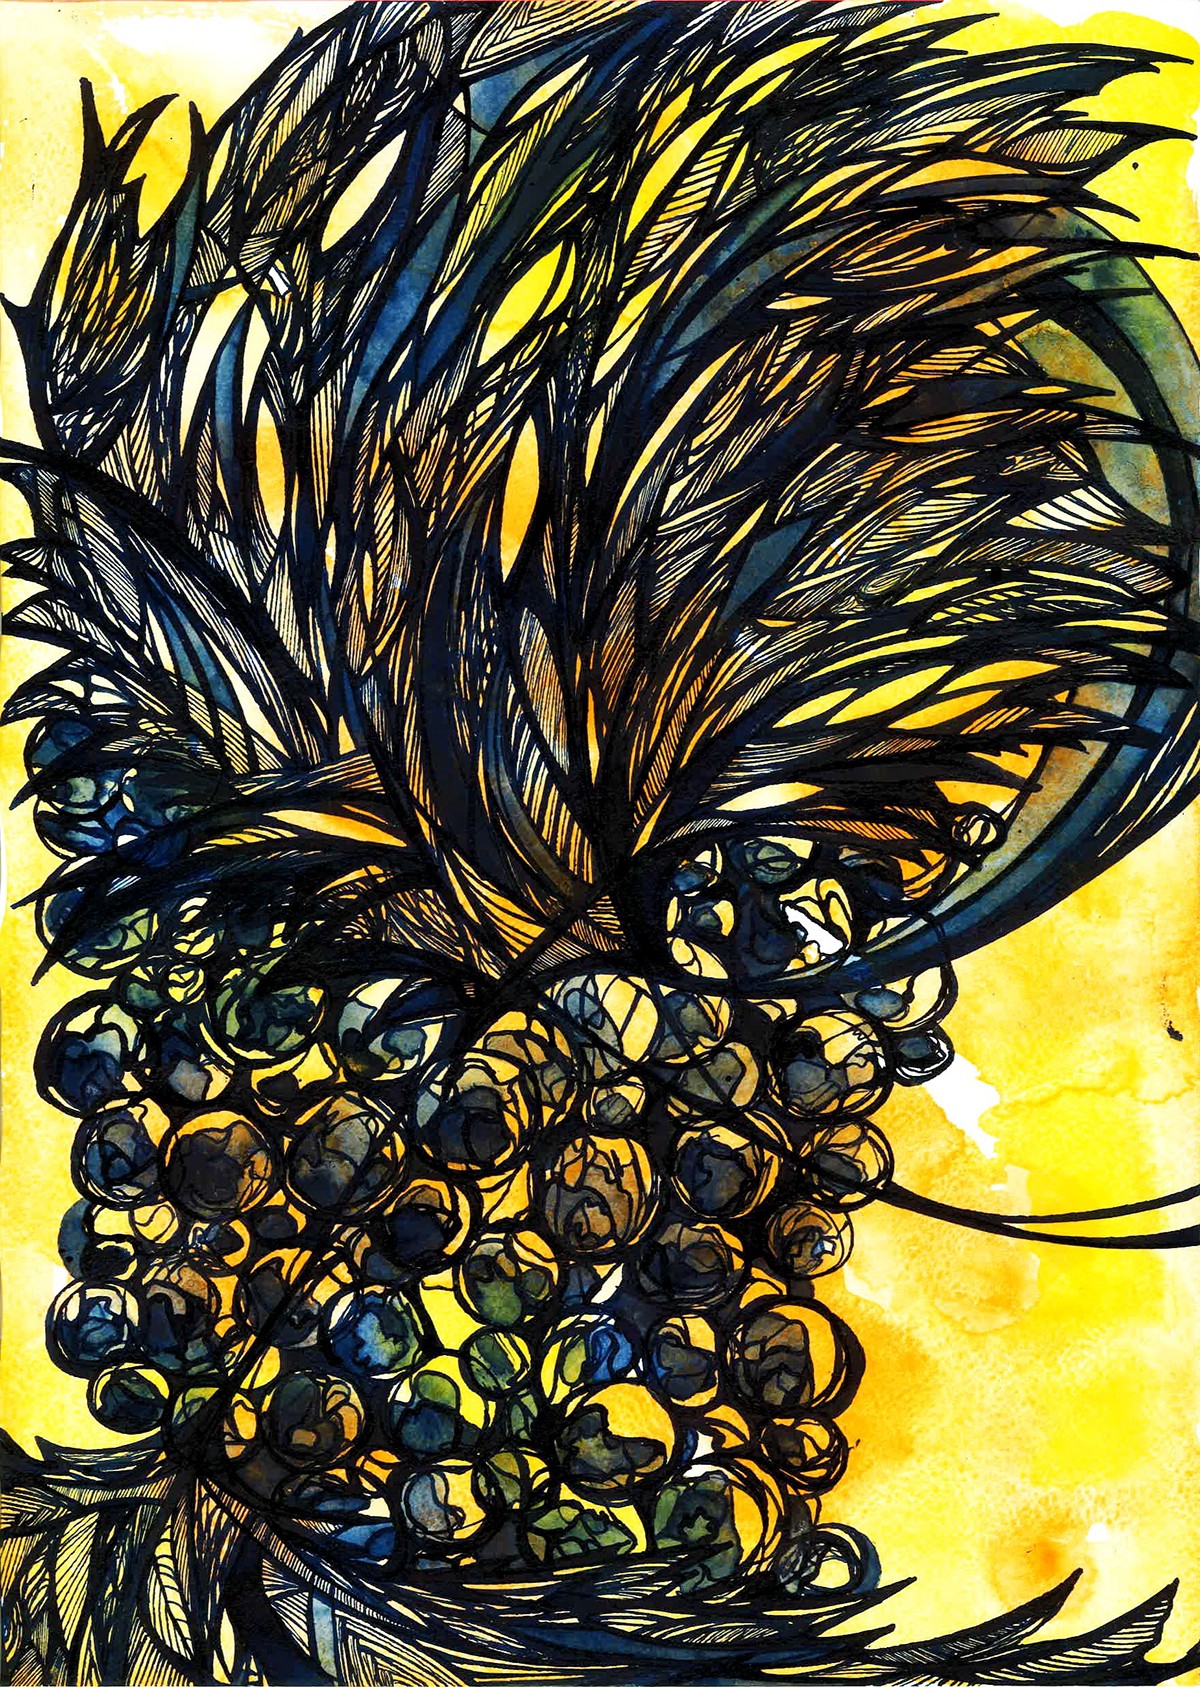 strasbourg france alsace grapes Raisins ink Encre blue yellow watercolor Aquarelles peinture mixed media